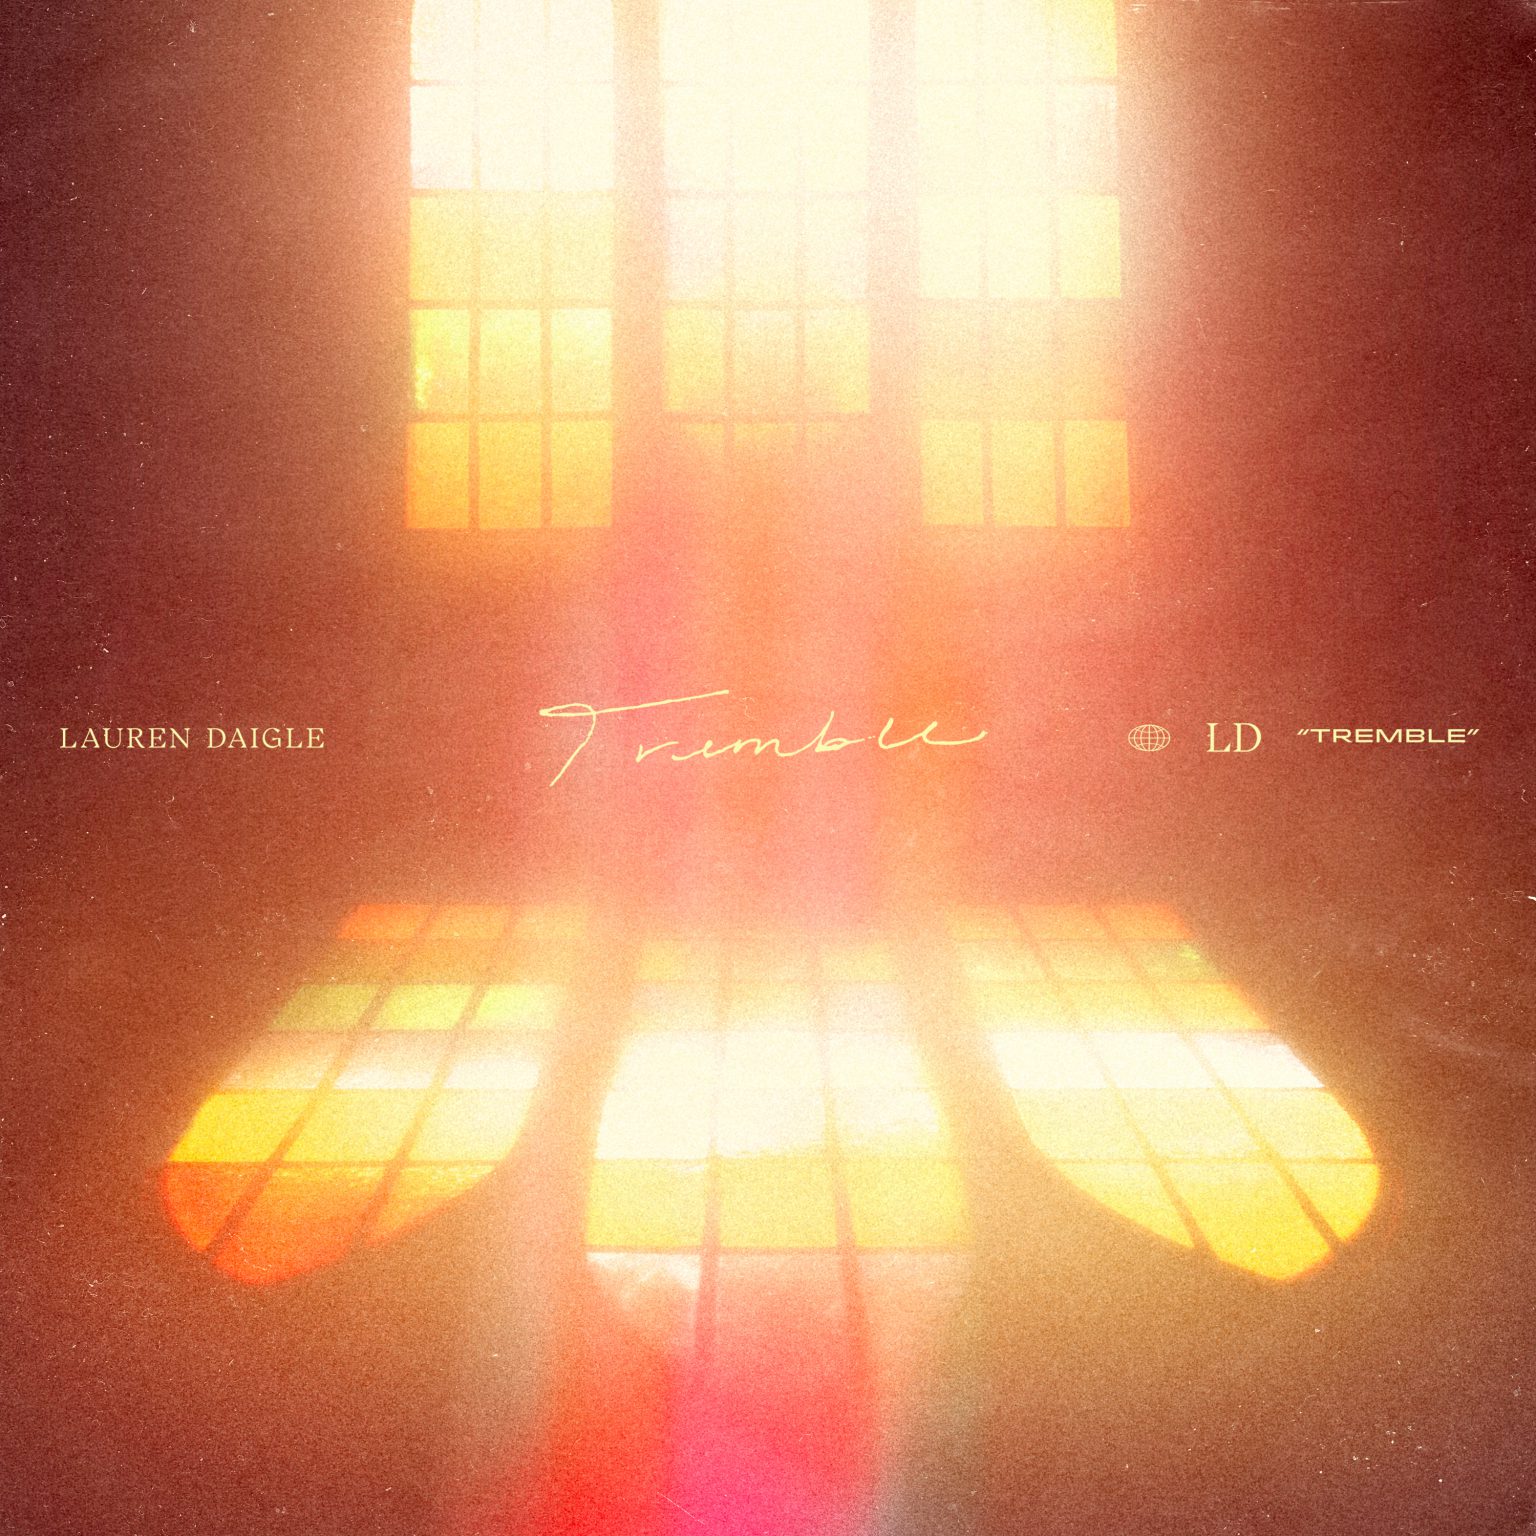 Lauren Daiglecentricity Music “tremble” On Worshipteam 8445